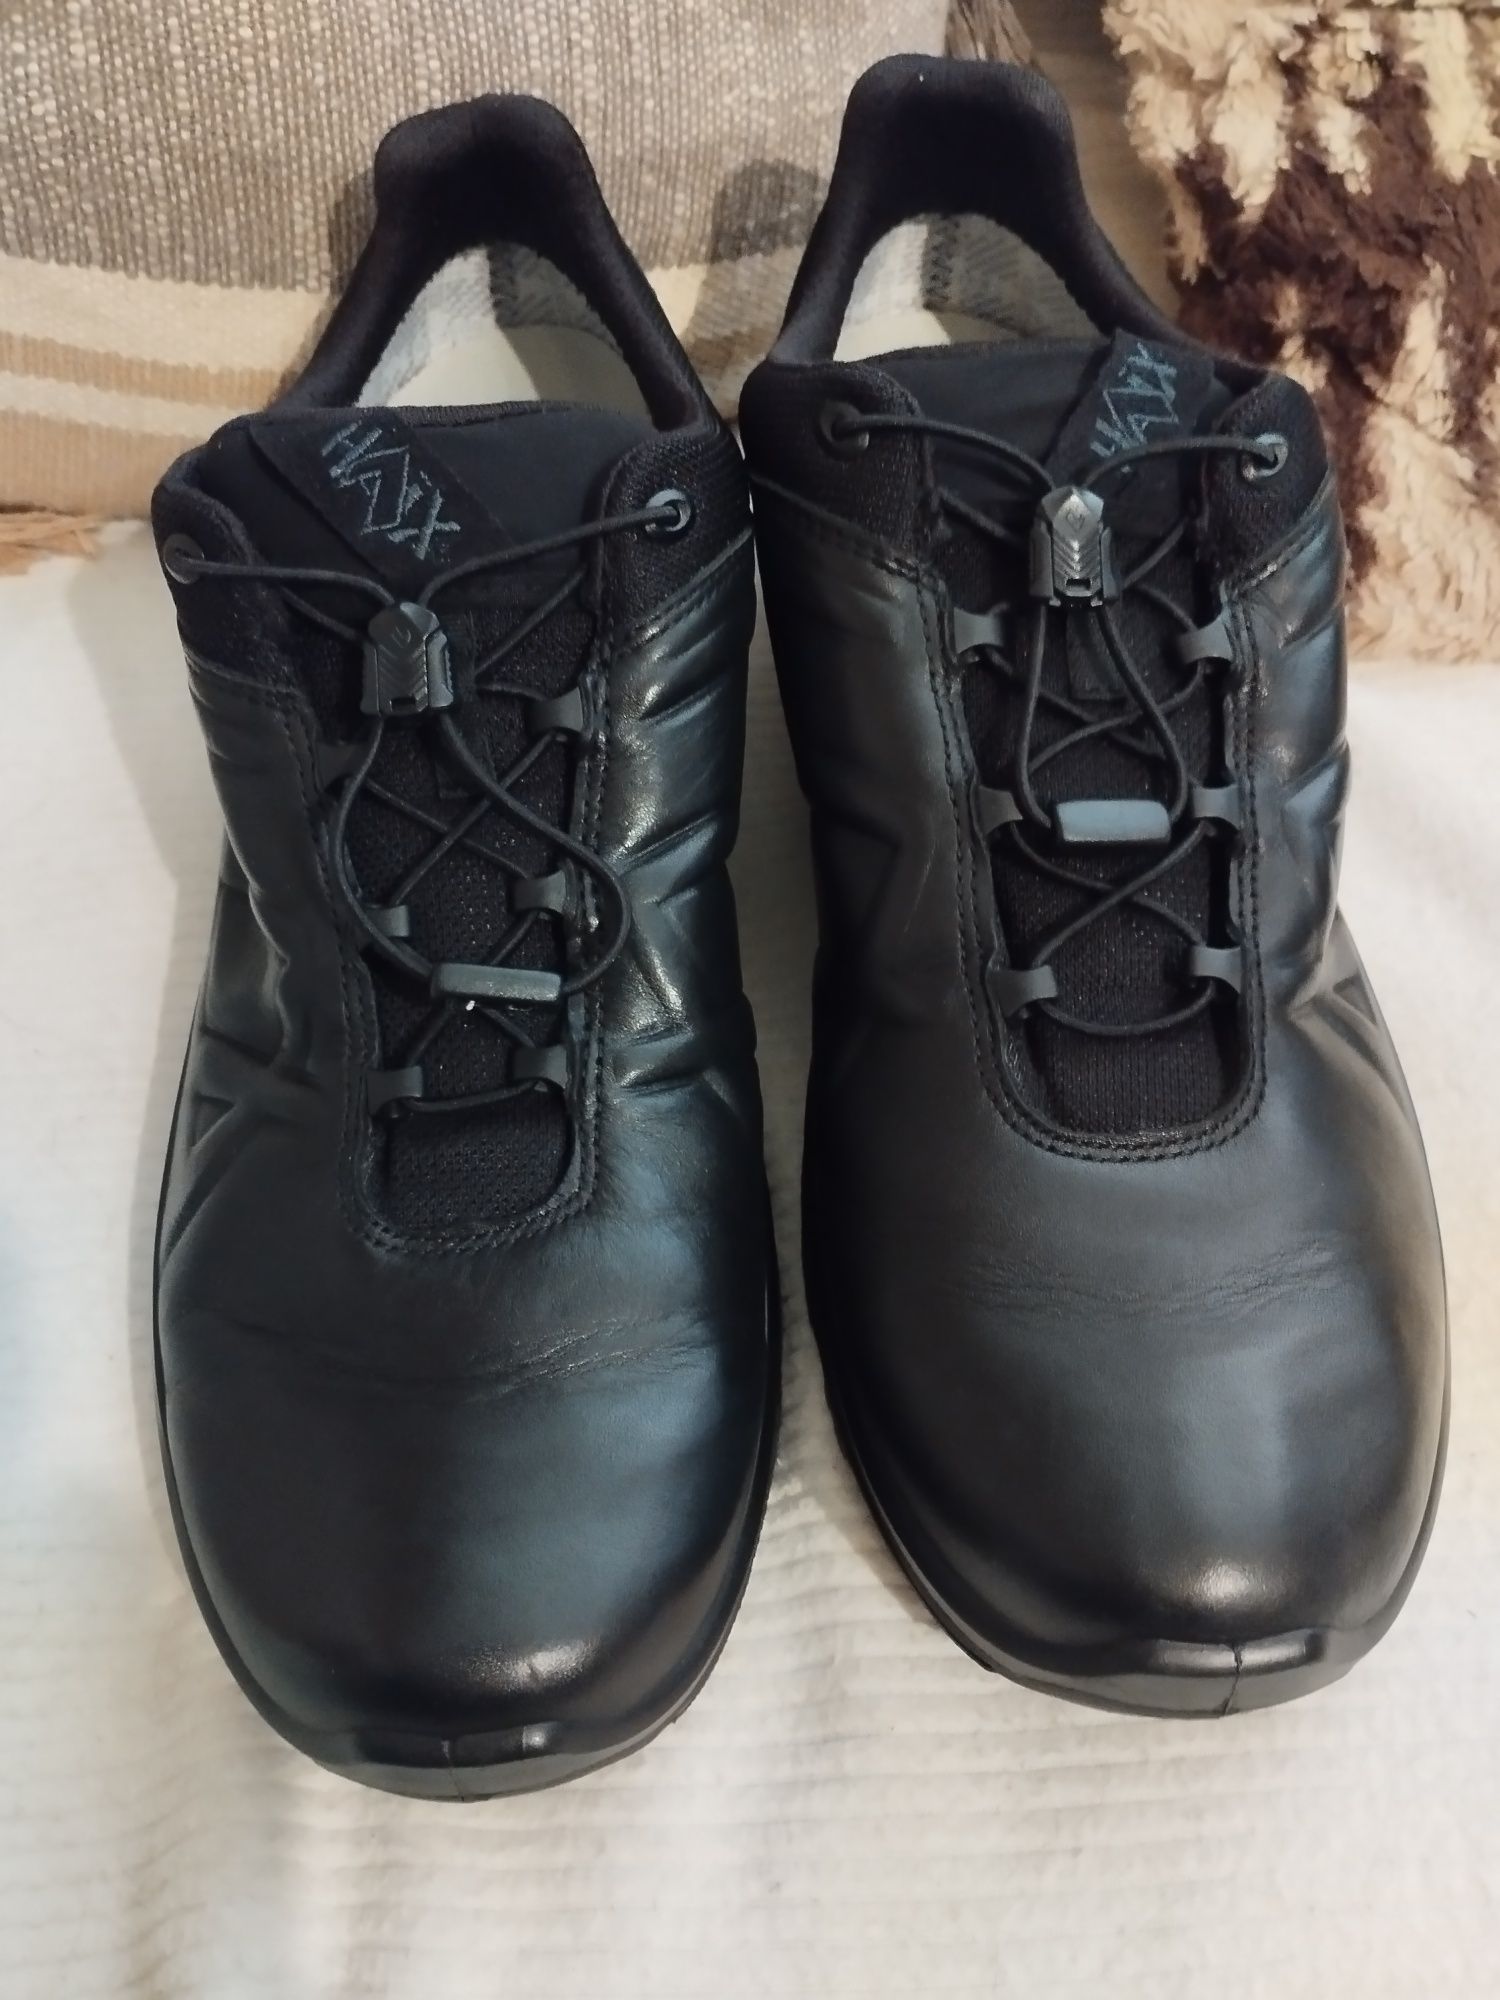 №45 Турустически обувки Haix "Black Eagle Tactical 2.1 GTX" като нови